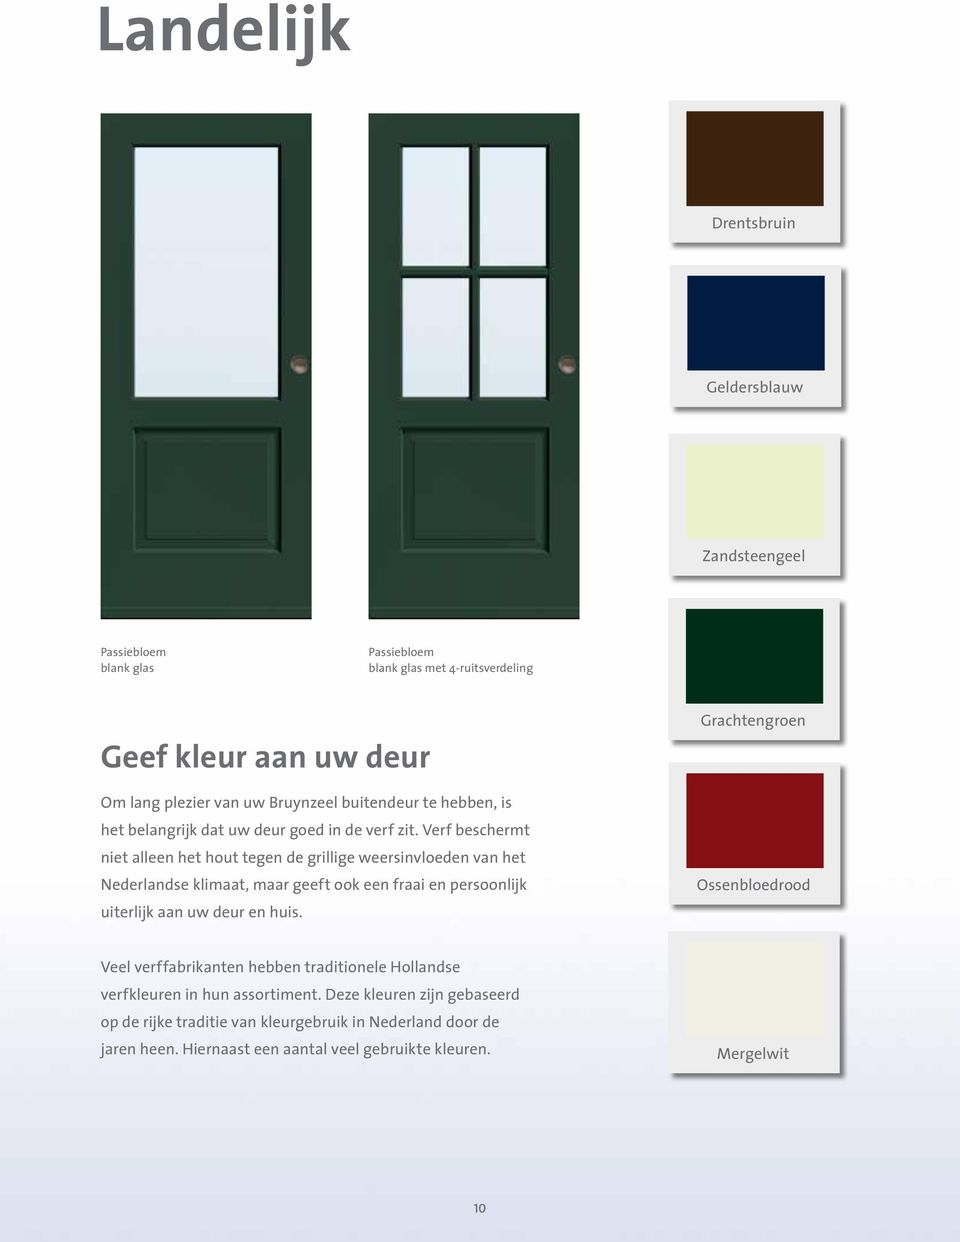 Verf beschermt niet alleen het hout tegen de grillige weersinvloeden van het Nederlandse klimaat, maar geeft ook een fraai en persoonlijk uiterlijk aan uw deur en huis.